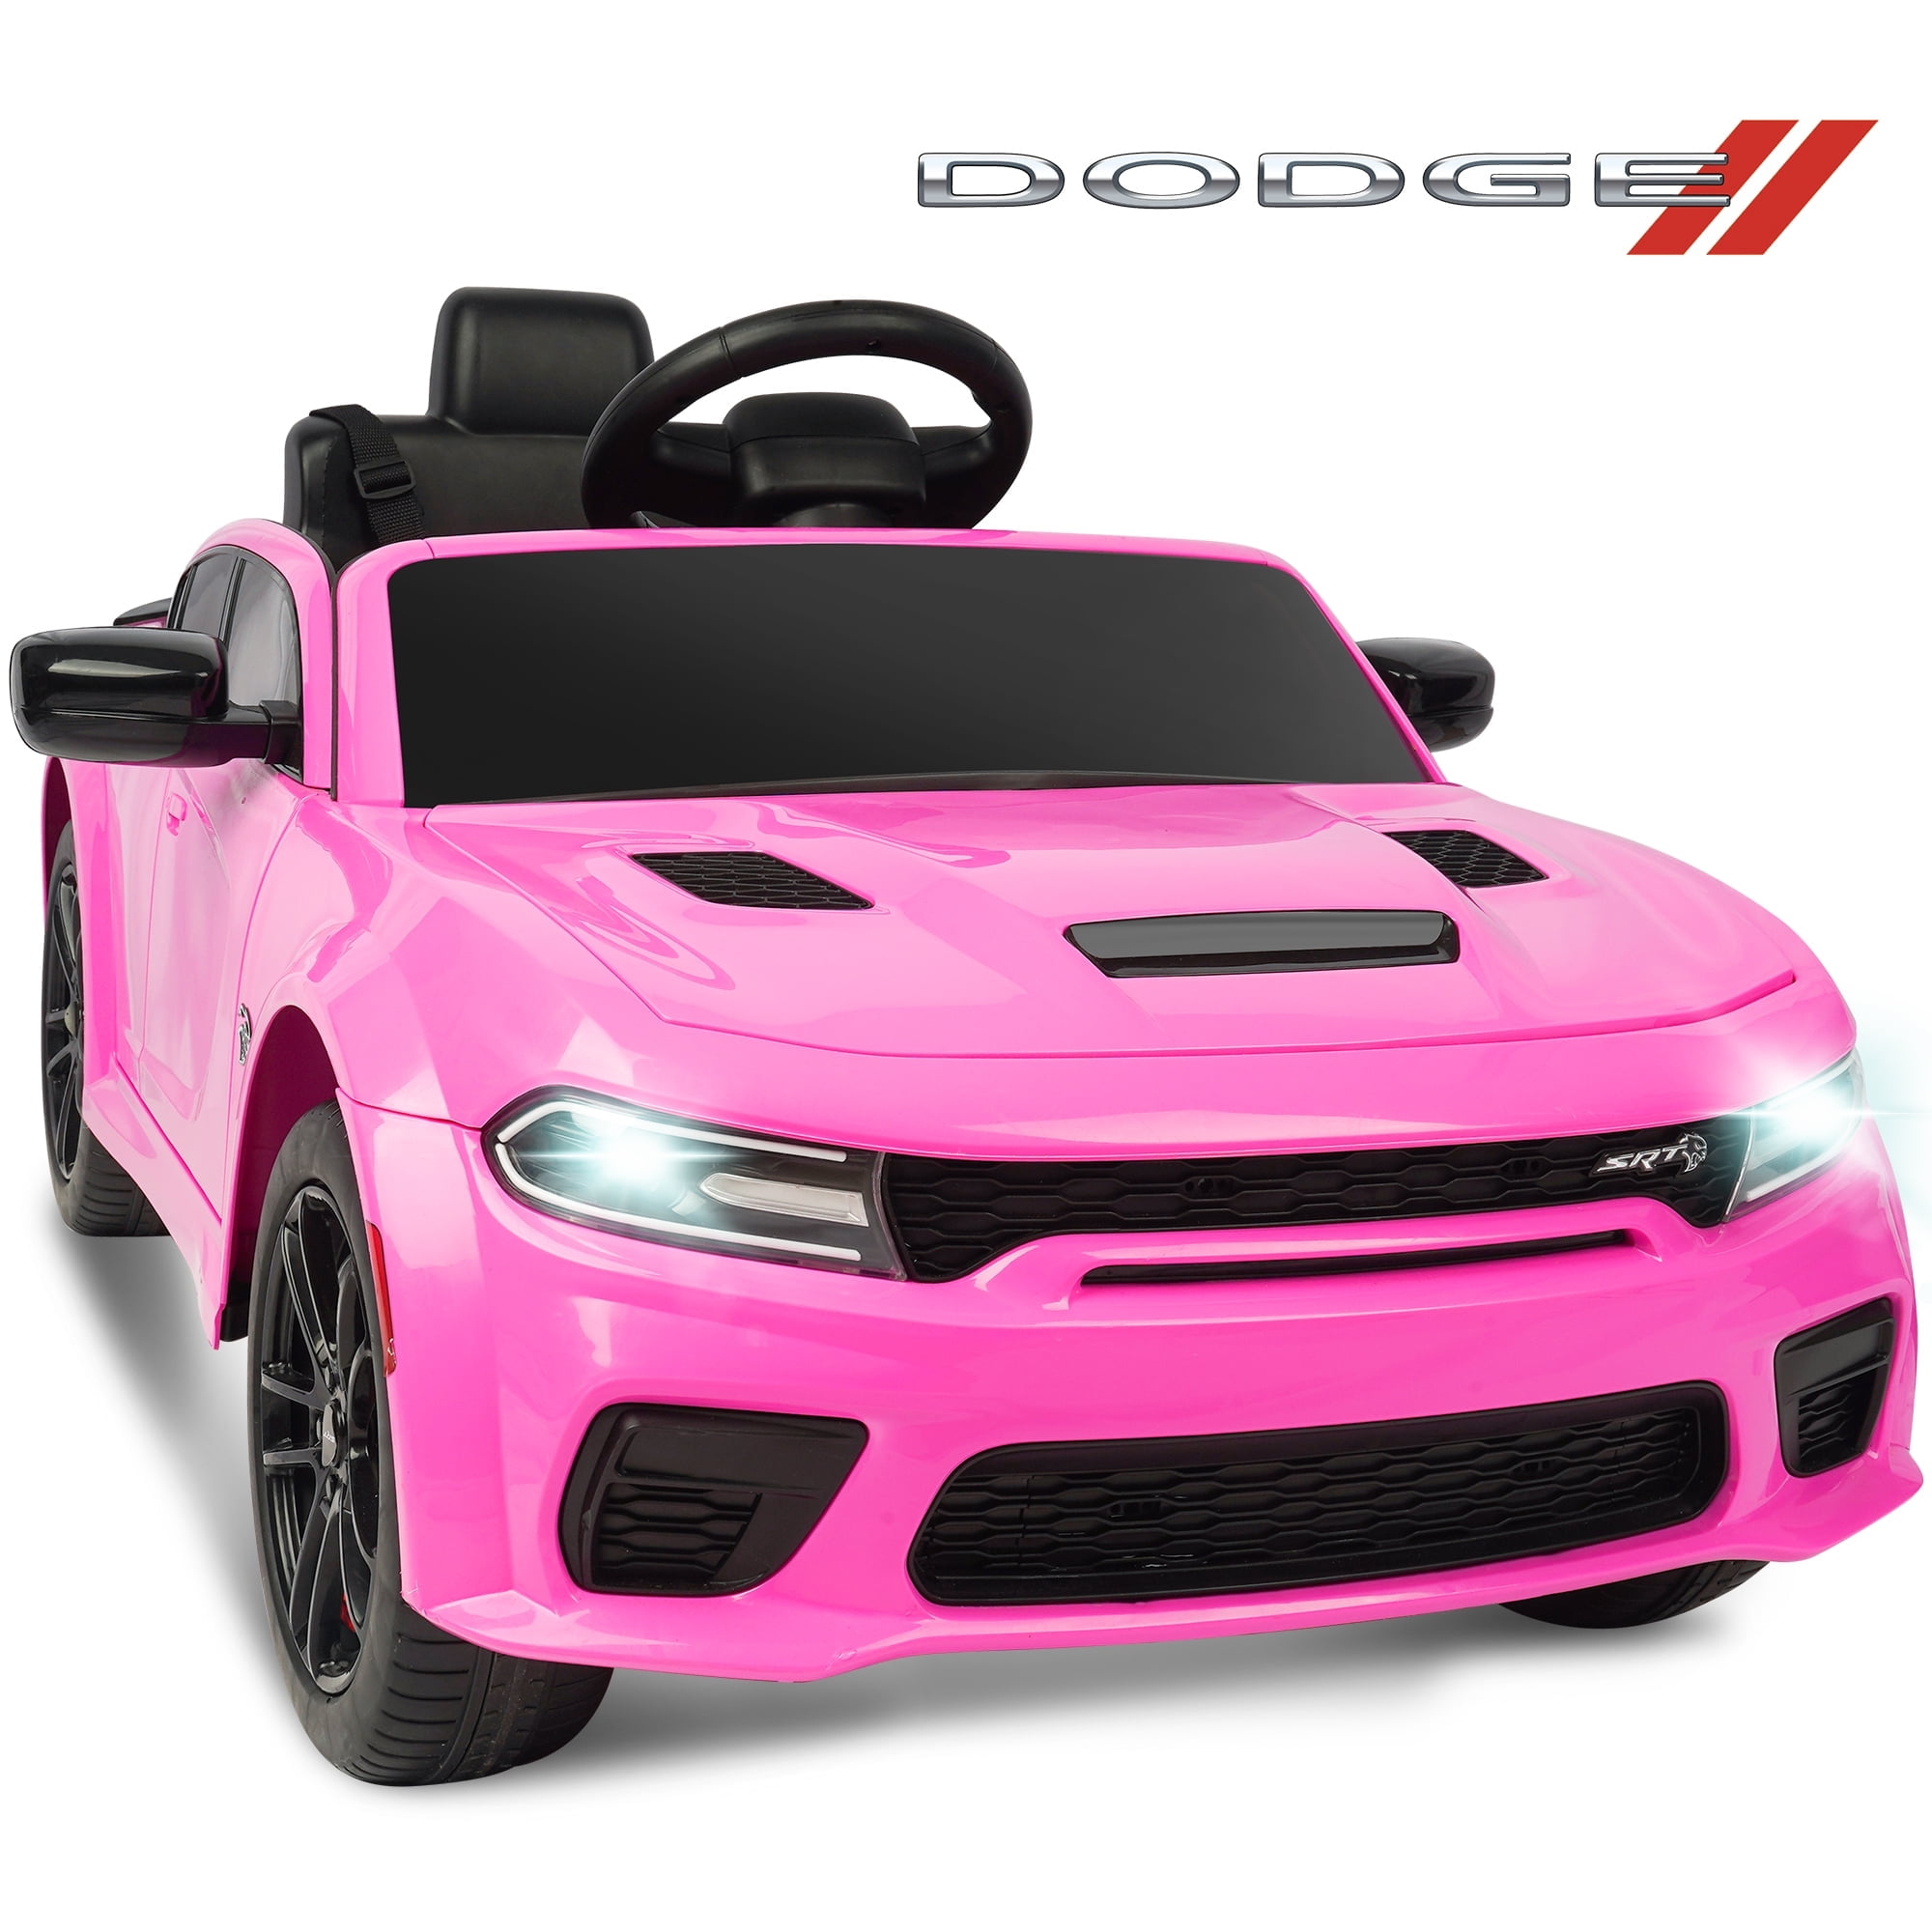 Dodge Electric Ride on Cars for Kids, 12 V Licensed Dodge Charger